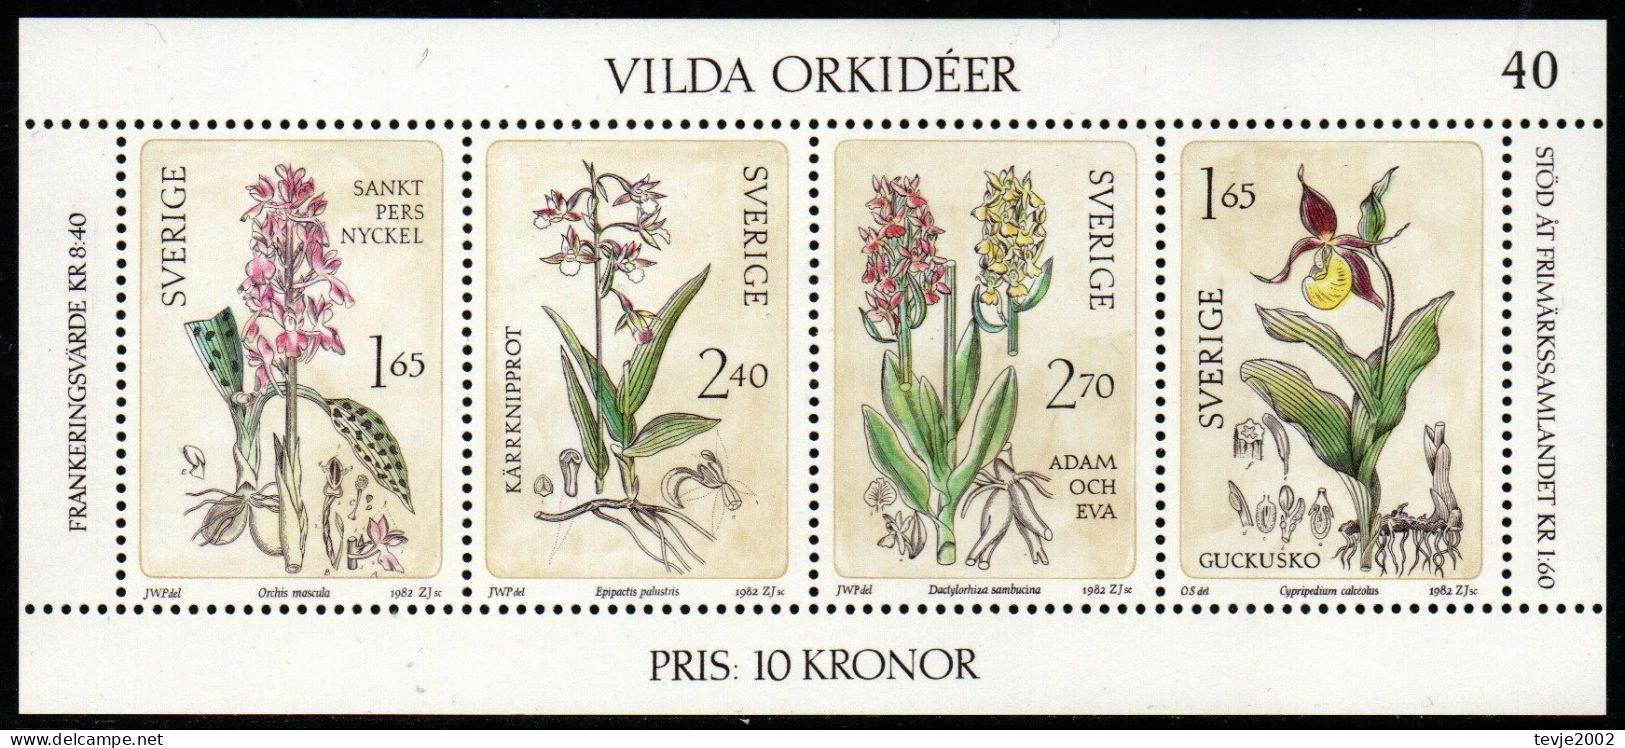 Schweden Sverige 1982 - Mi.Nr. Block 10 - Postfrisch MNH - Blumen Flowers Orchideen Orchids - Orchideeën